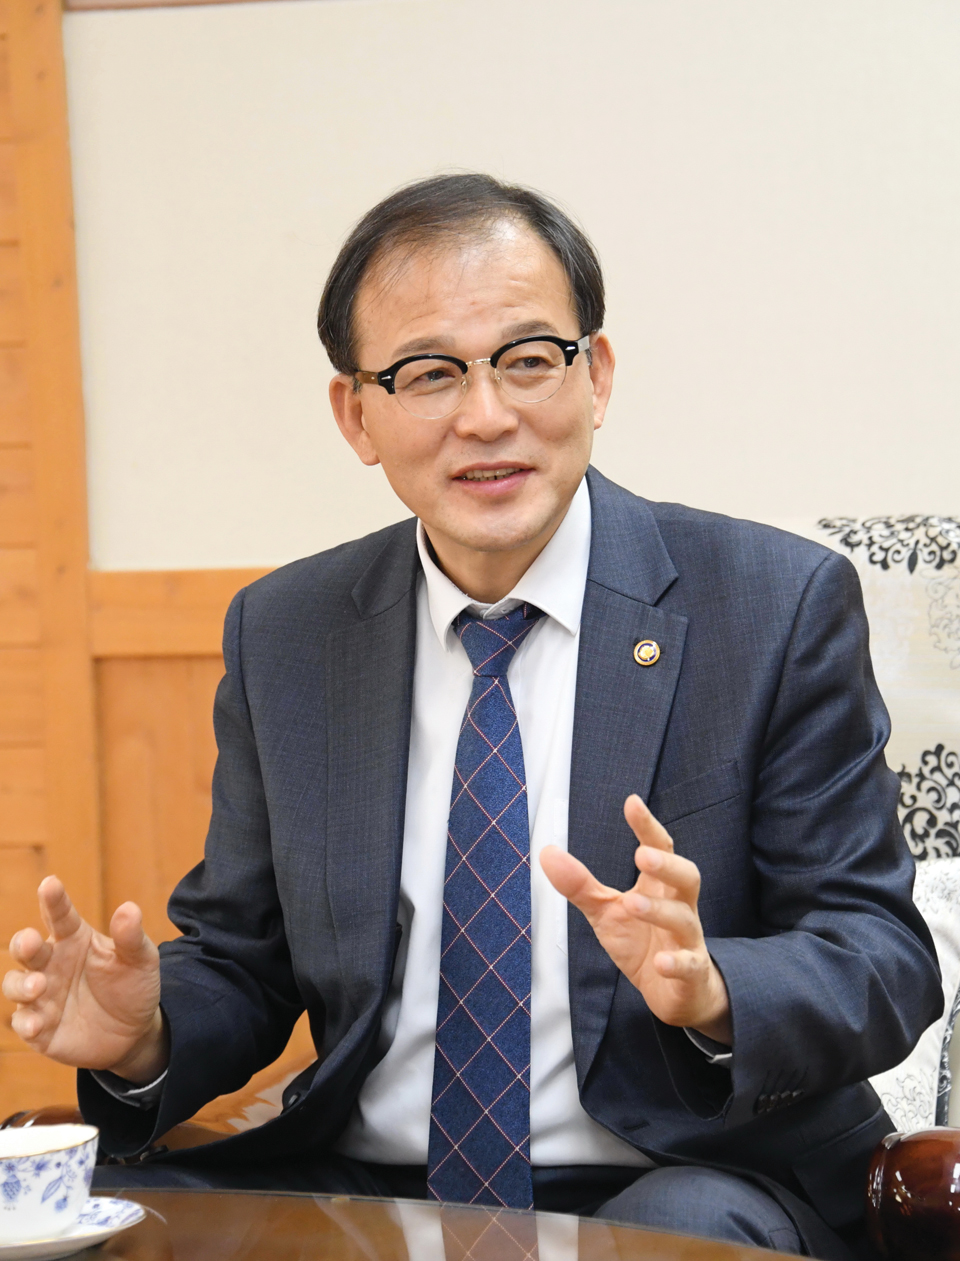 박종호 산림청장이 취임 100일 인터뷰에서 산림정책에 대해 설명하고 있다.